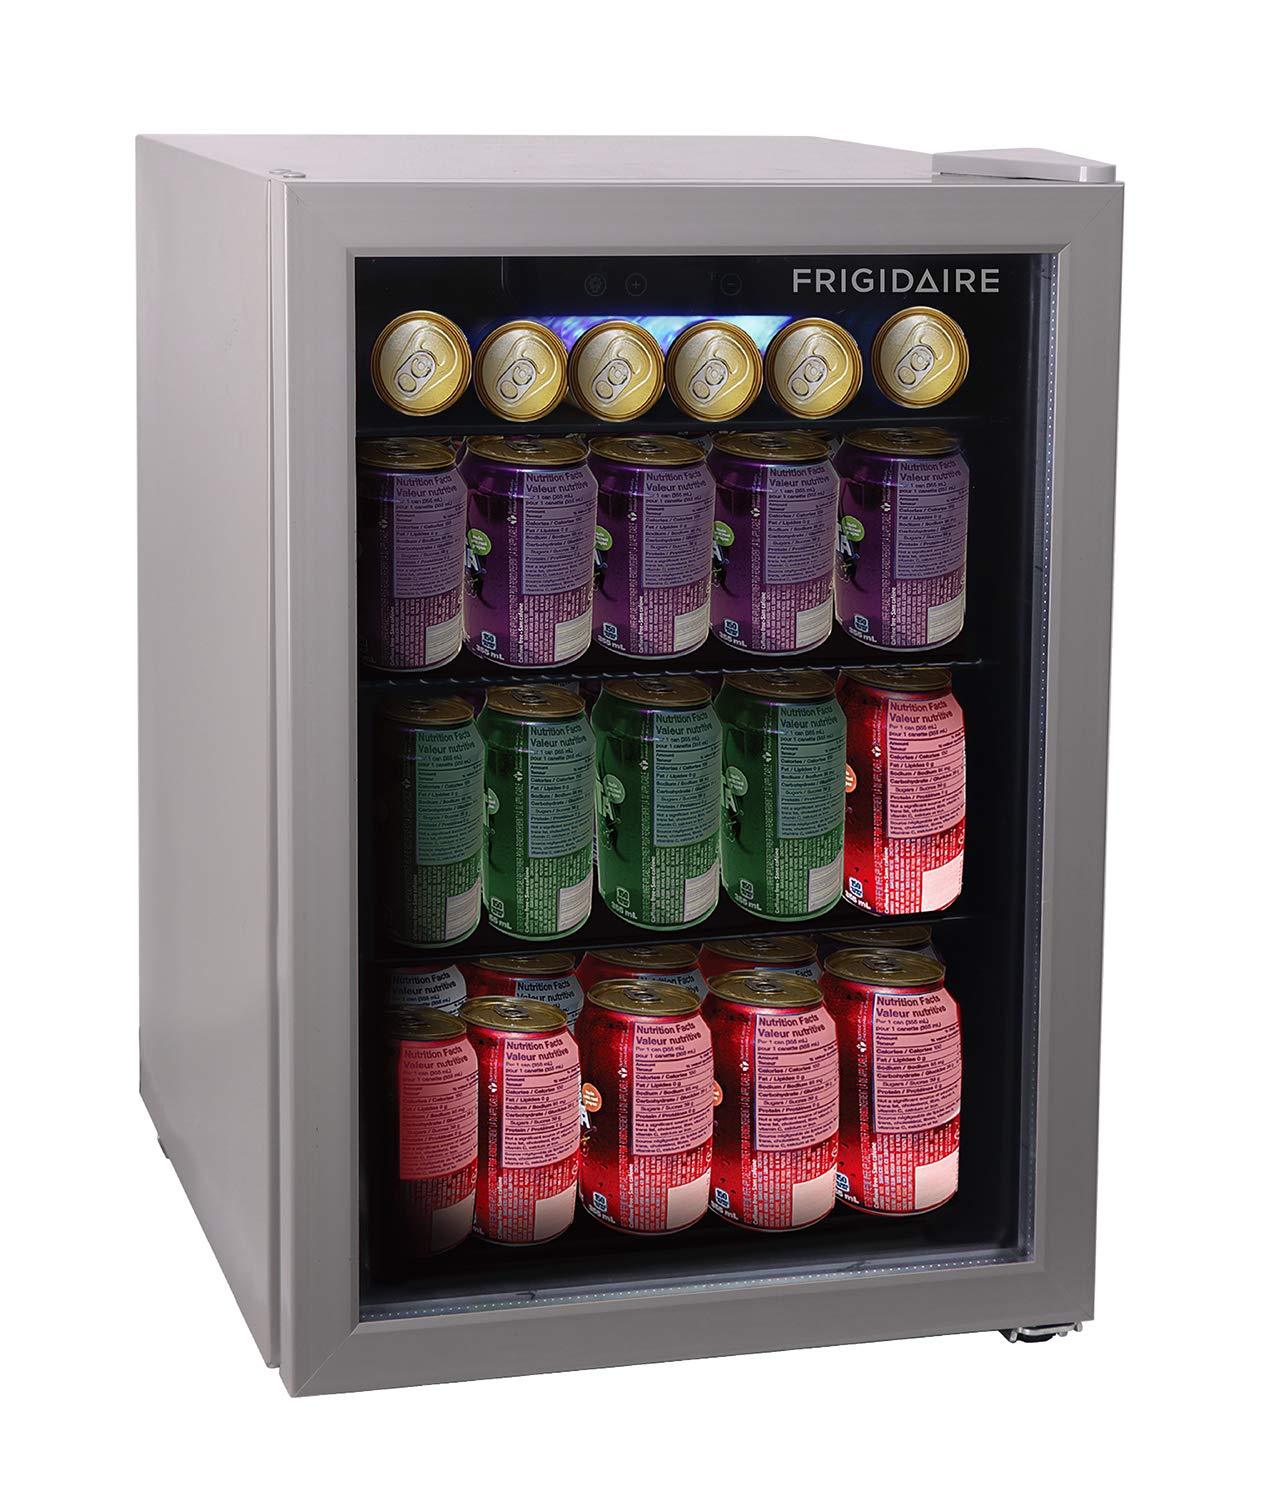 FRIGIDAIRE EFMIS9000-AMZ Freestanding Beverage Center Fridge-Fits 25 Bottles OR 88 Cans, Black - CookCave